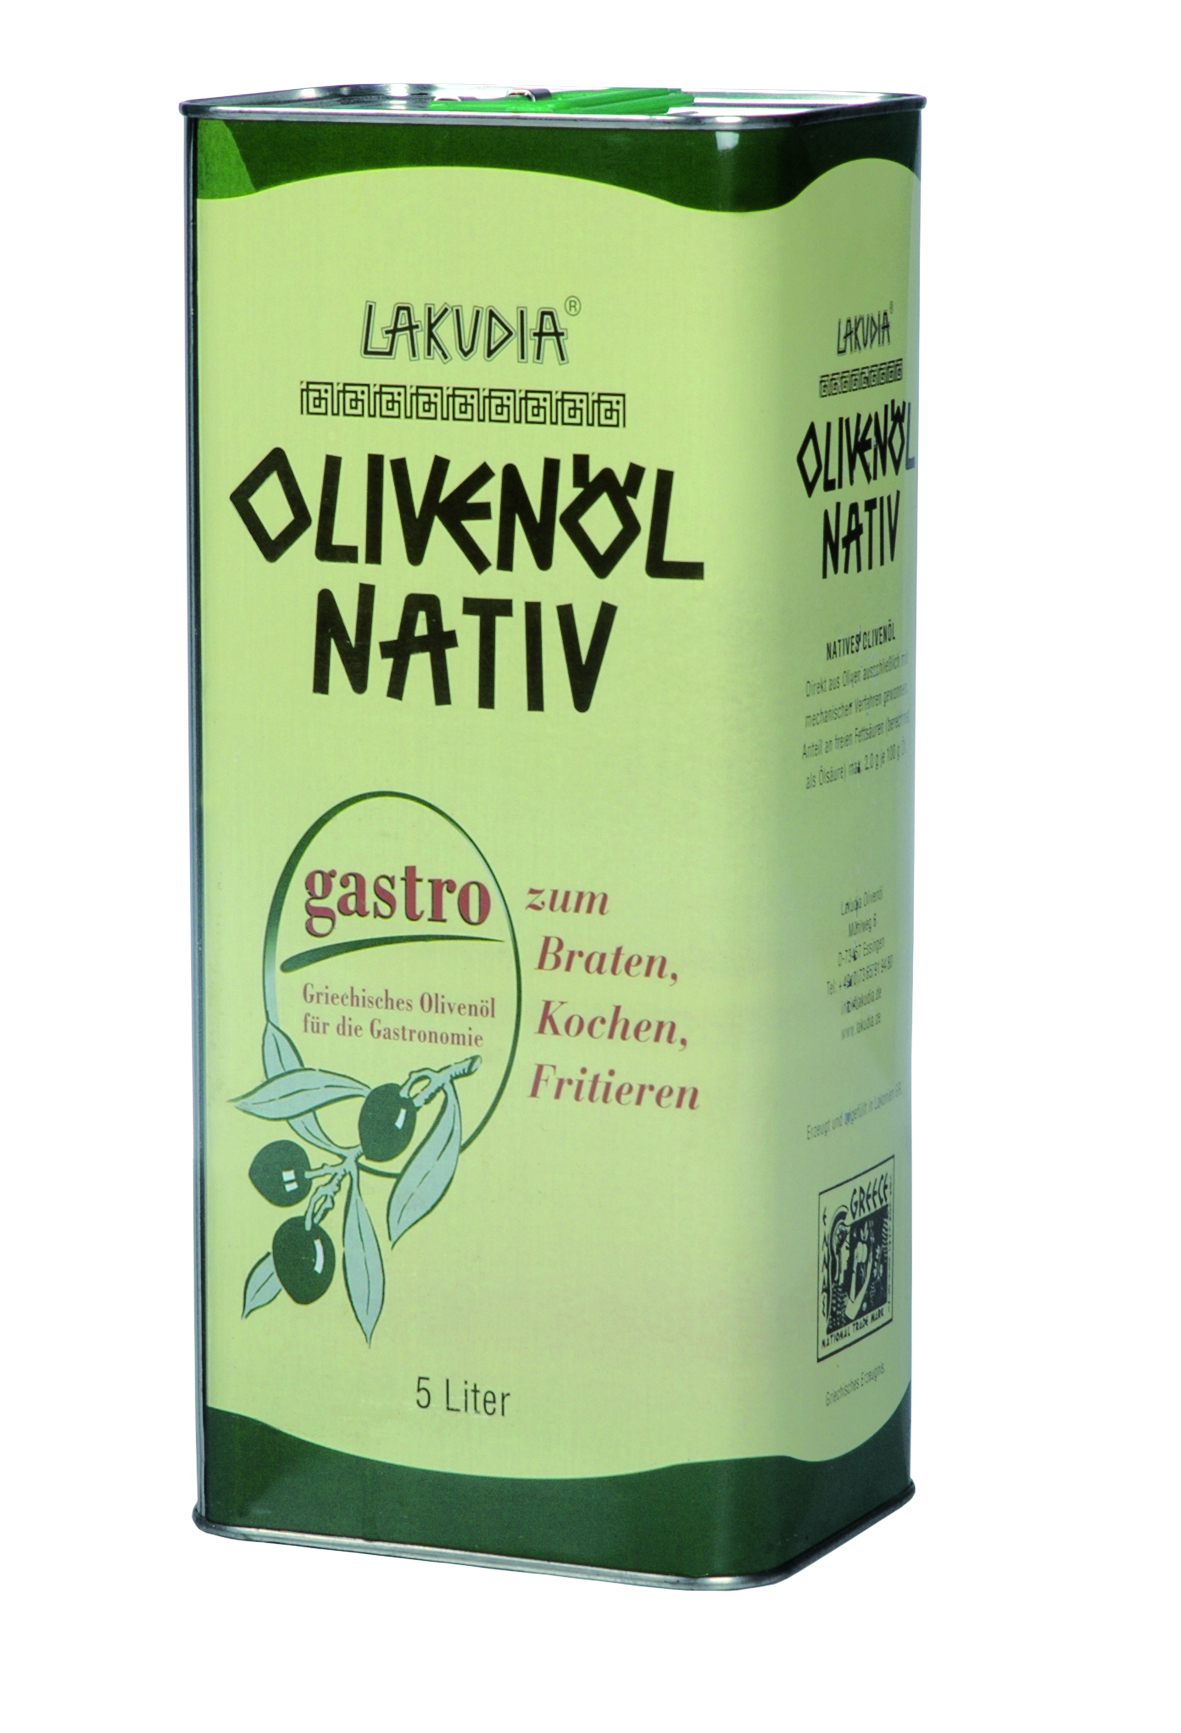 5 Liter Natives Lakudia Gastro Olivenöl zum Braten und Kochen